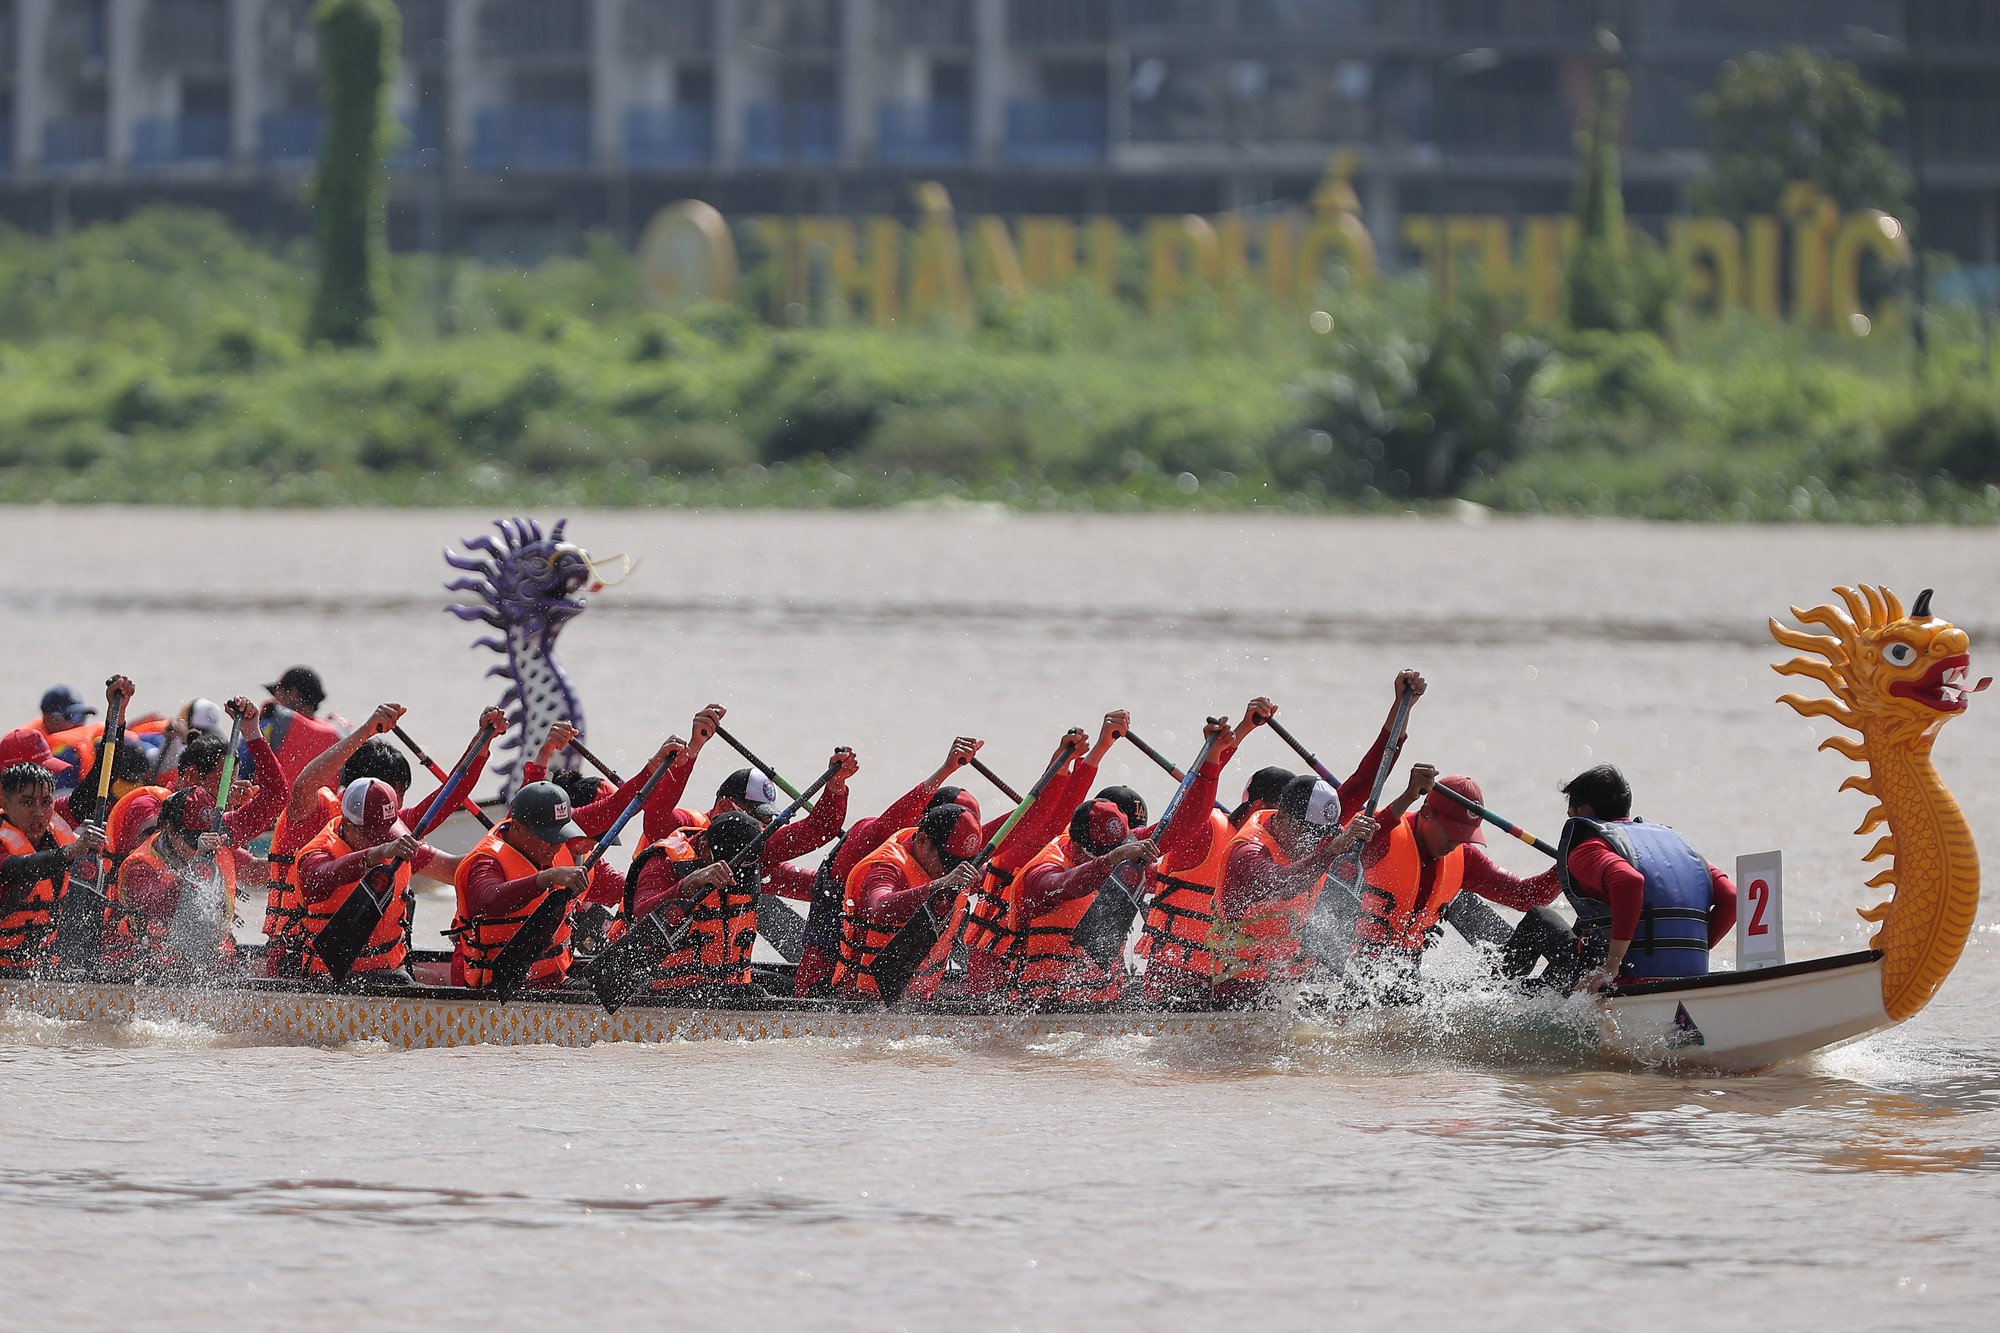 Sông Sài Gòn dậy sóng với giải đua thuyền truyền thống và trình diễn thể thao sông nước - Ảnh 4.